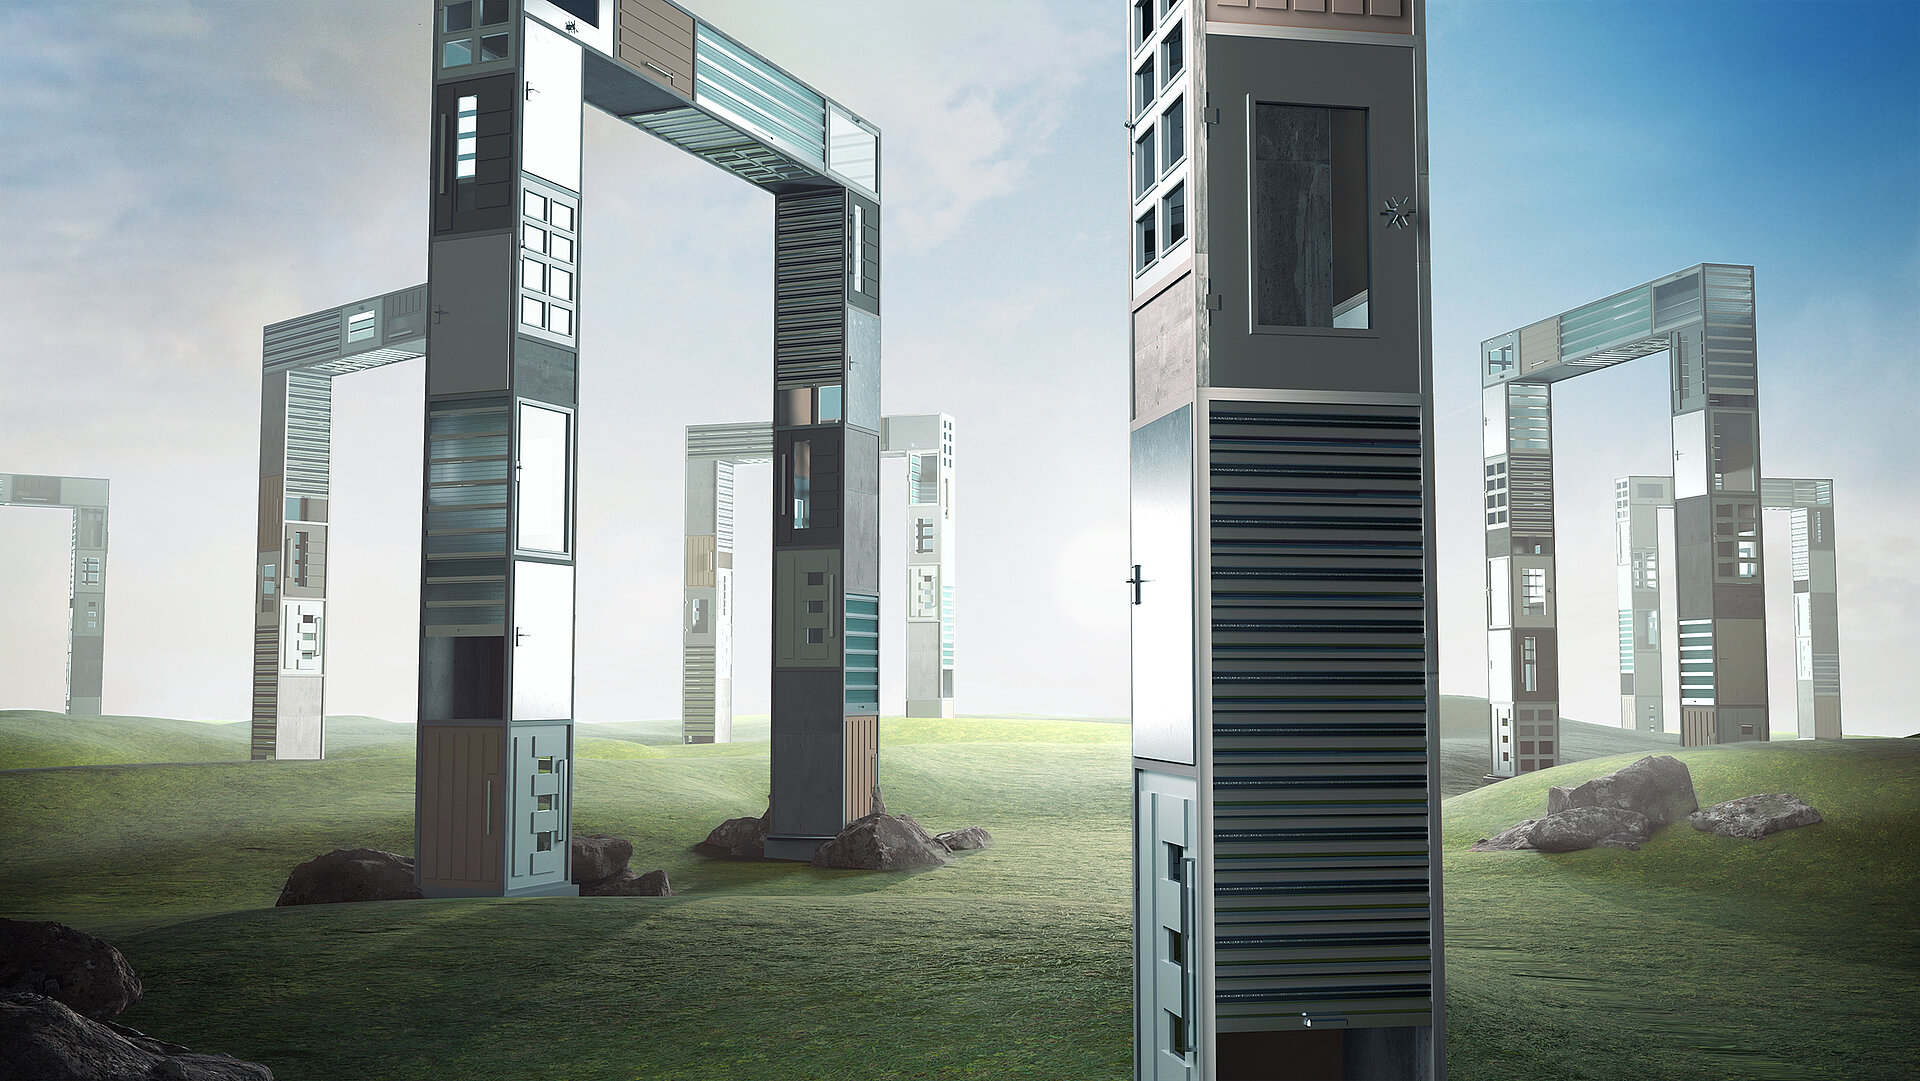 3D-Animation. In einer Landschaft sind viele Türme aus Türen und Toren zu sehen